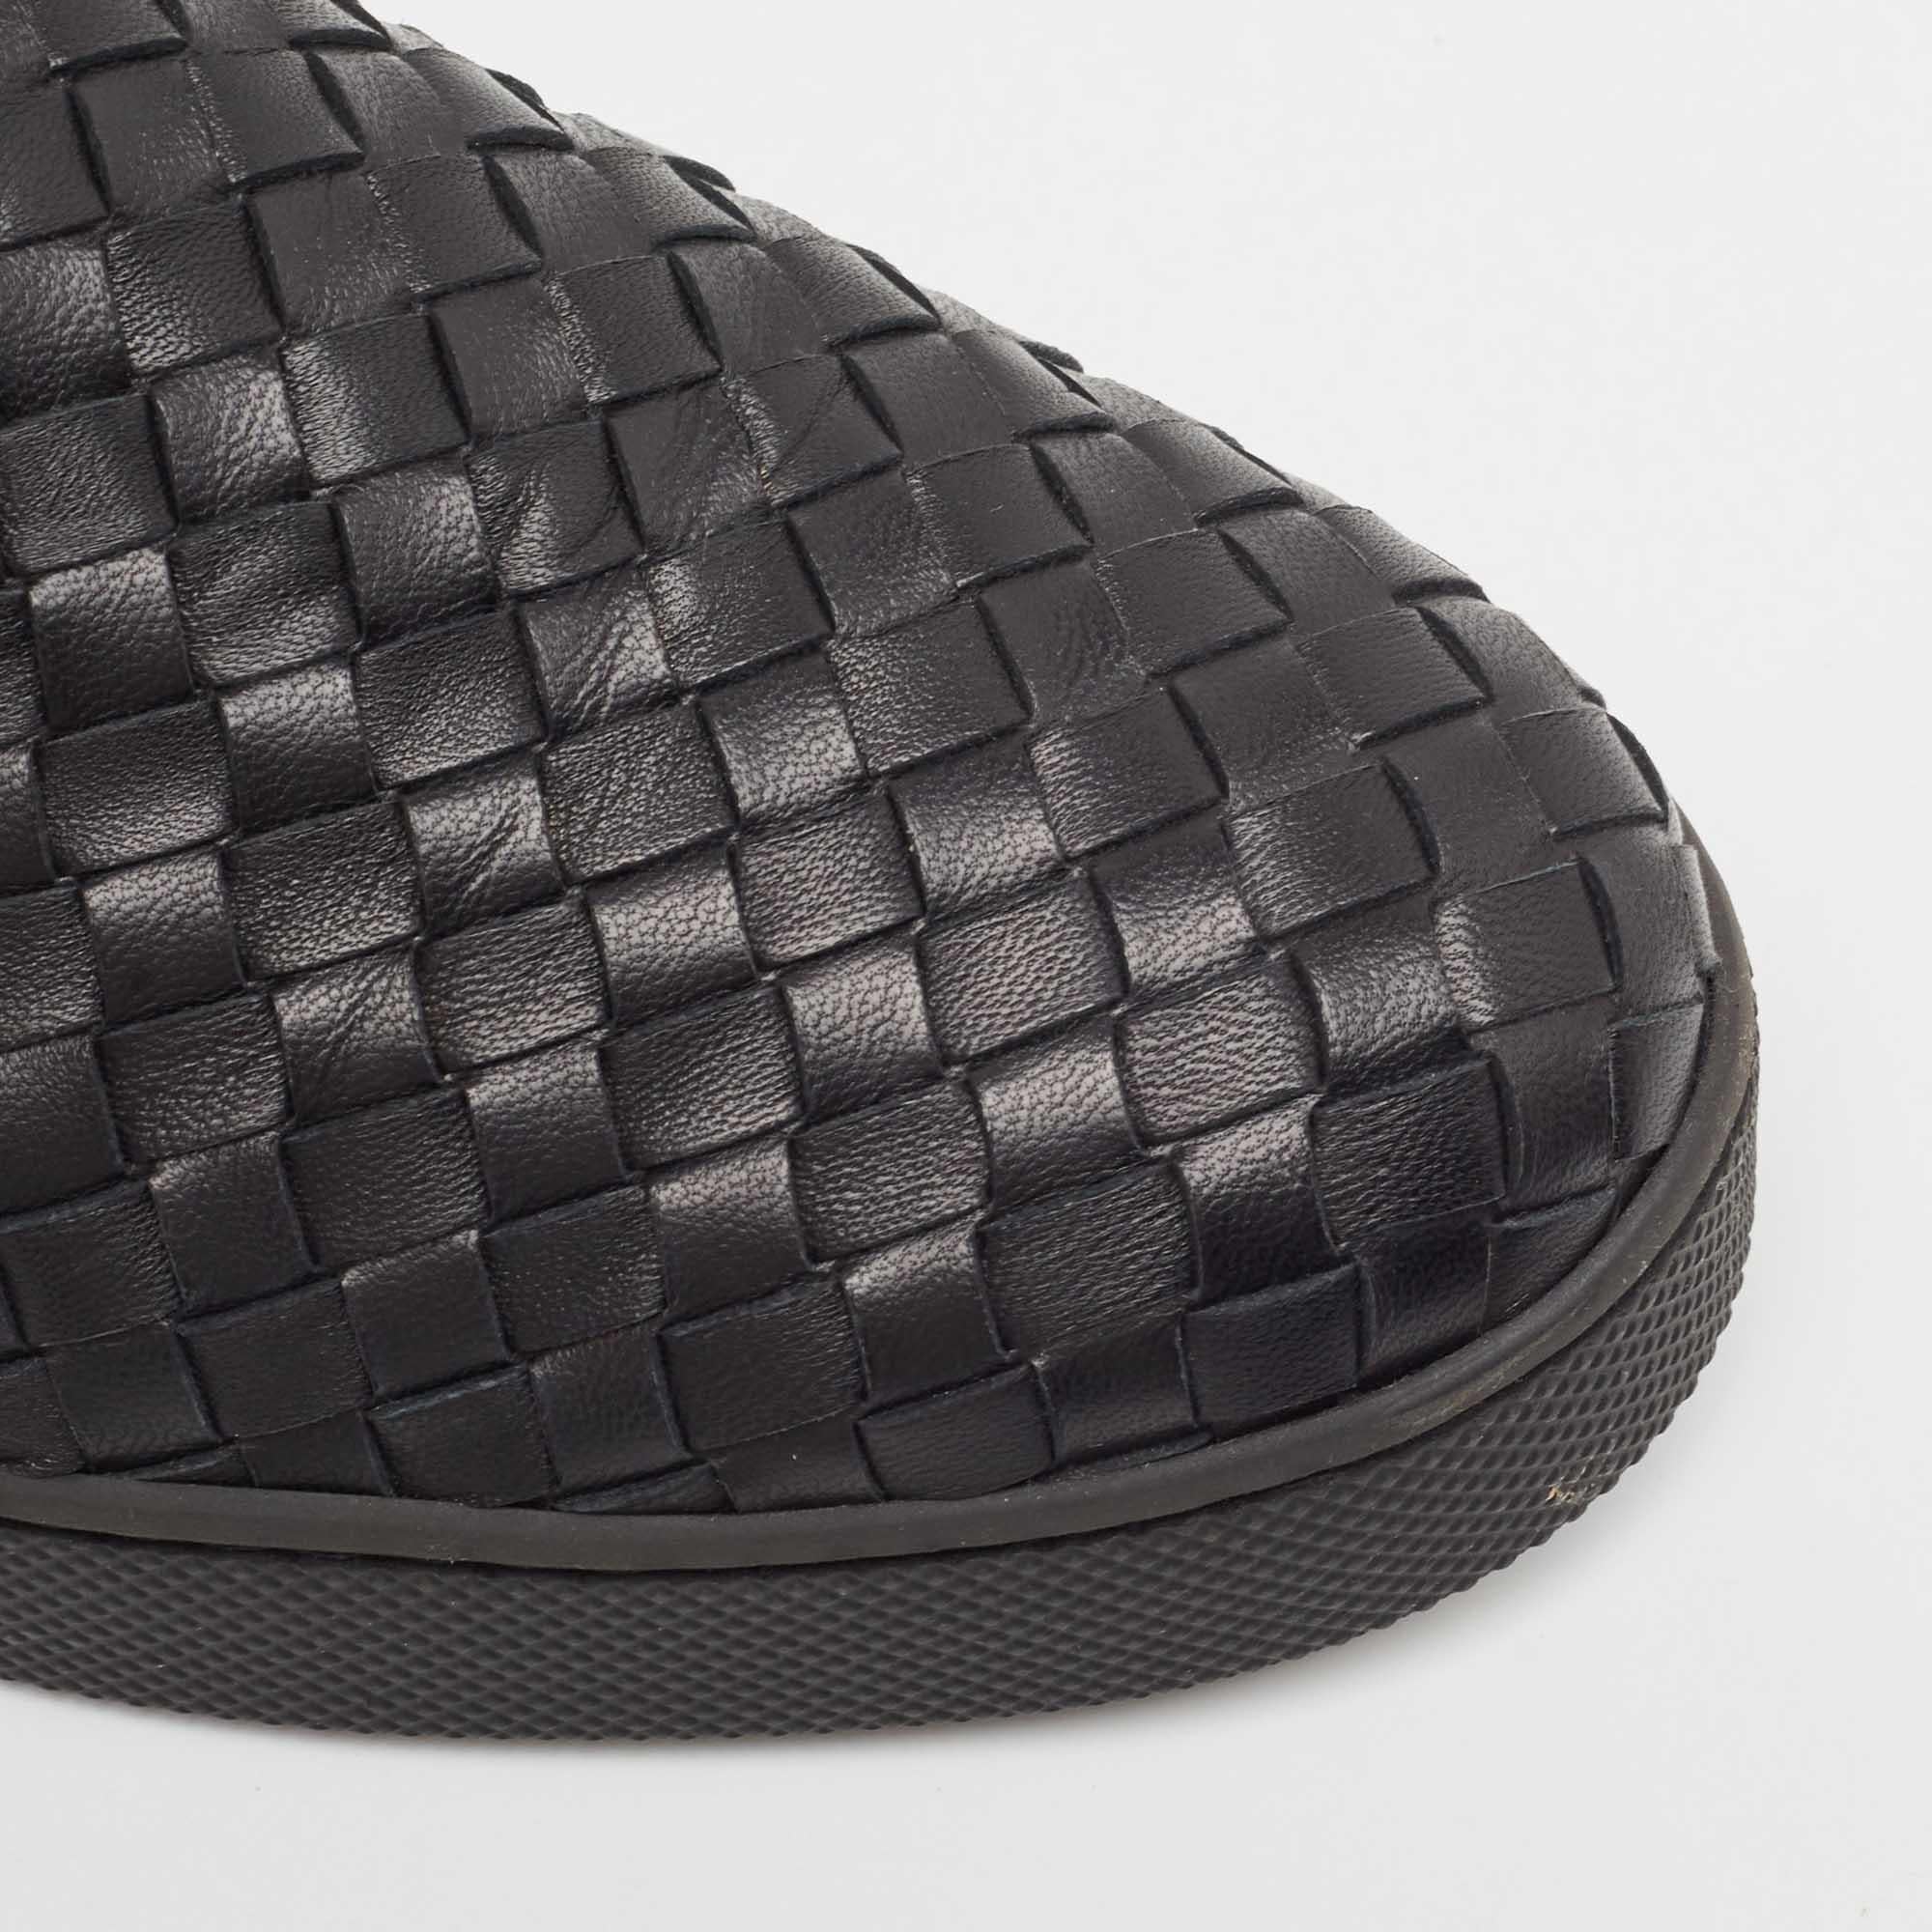 Bottega Veneta Black Intrecciato Leather Slip On Sneakers Size 40 1